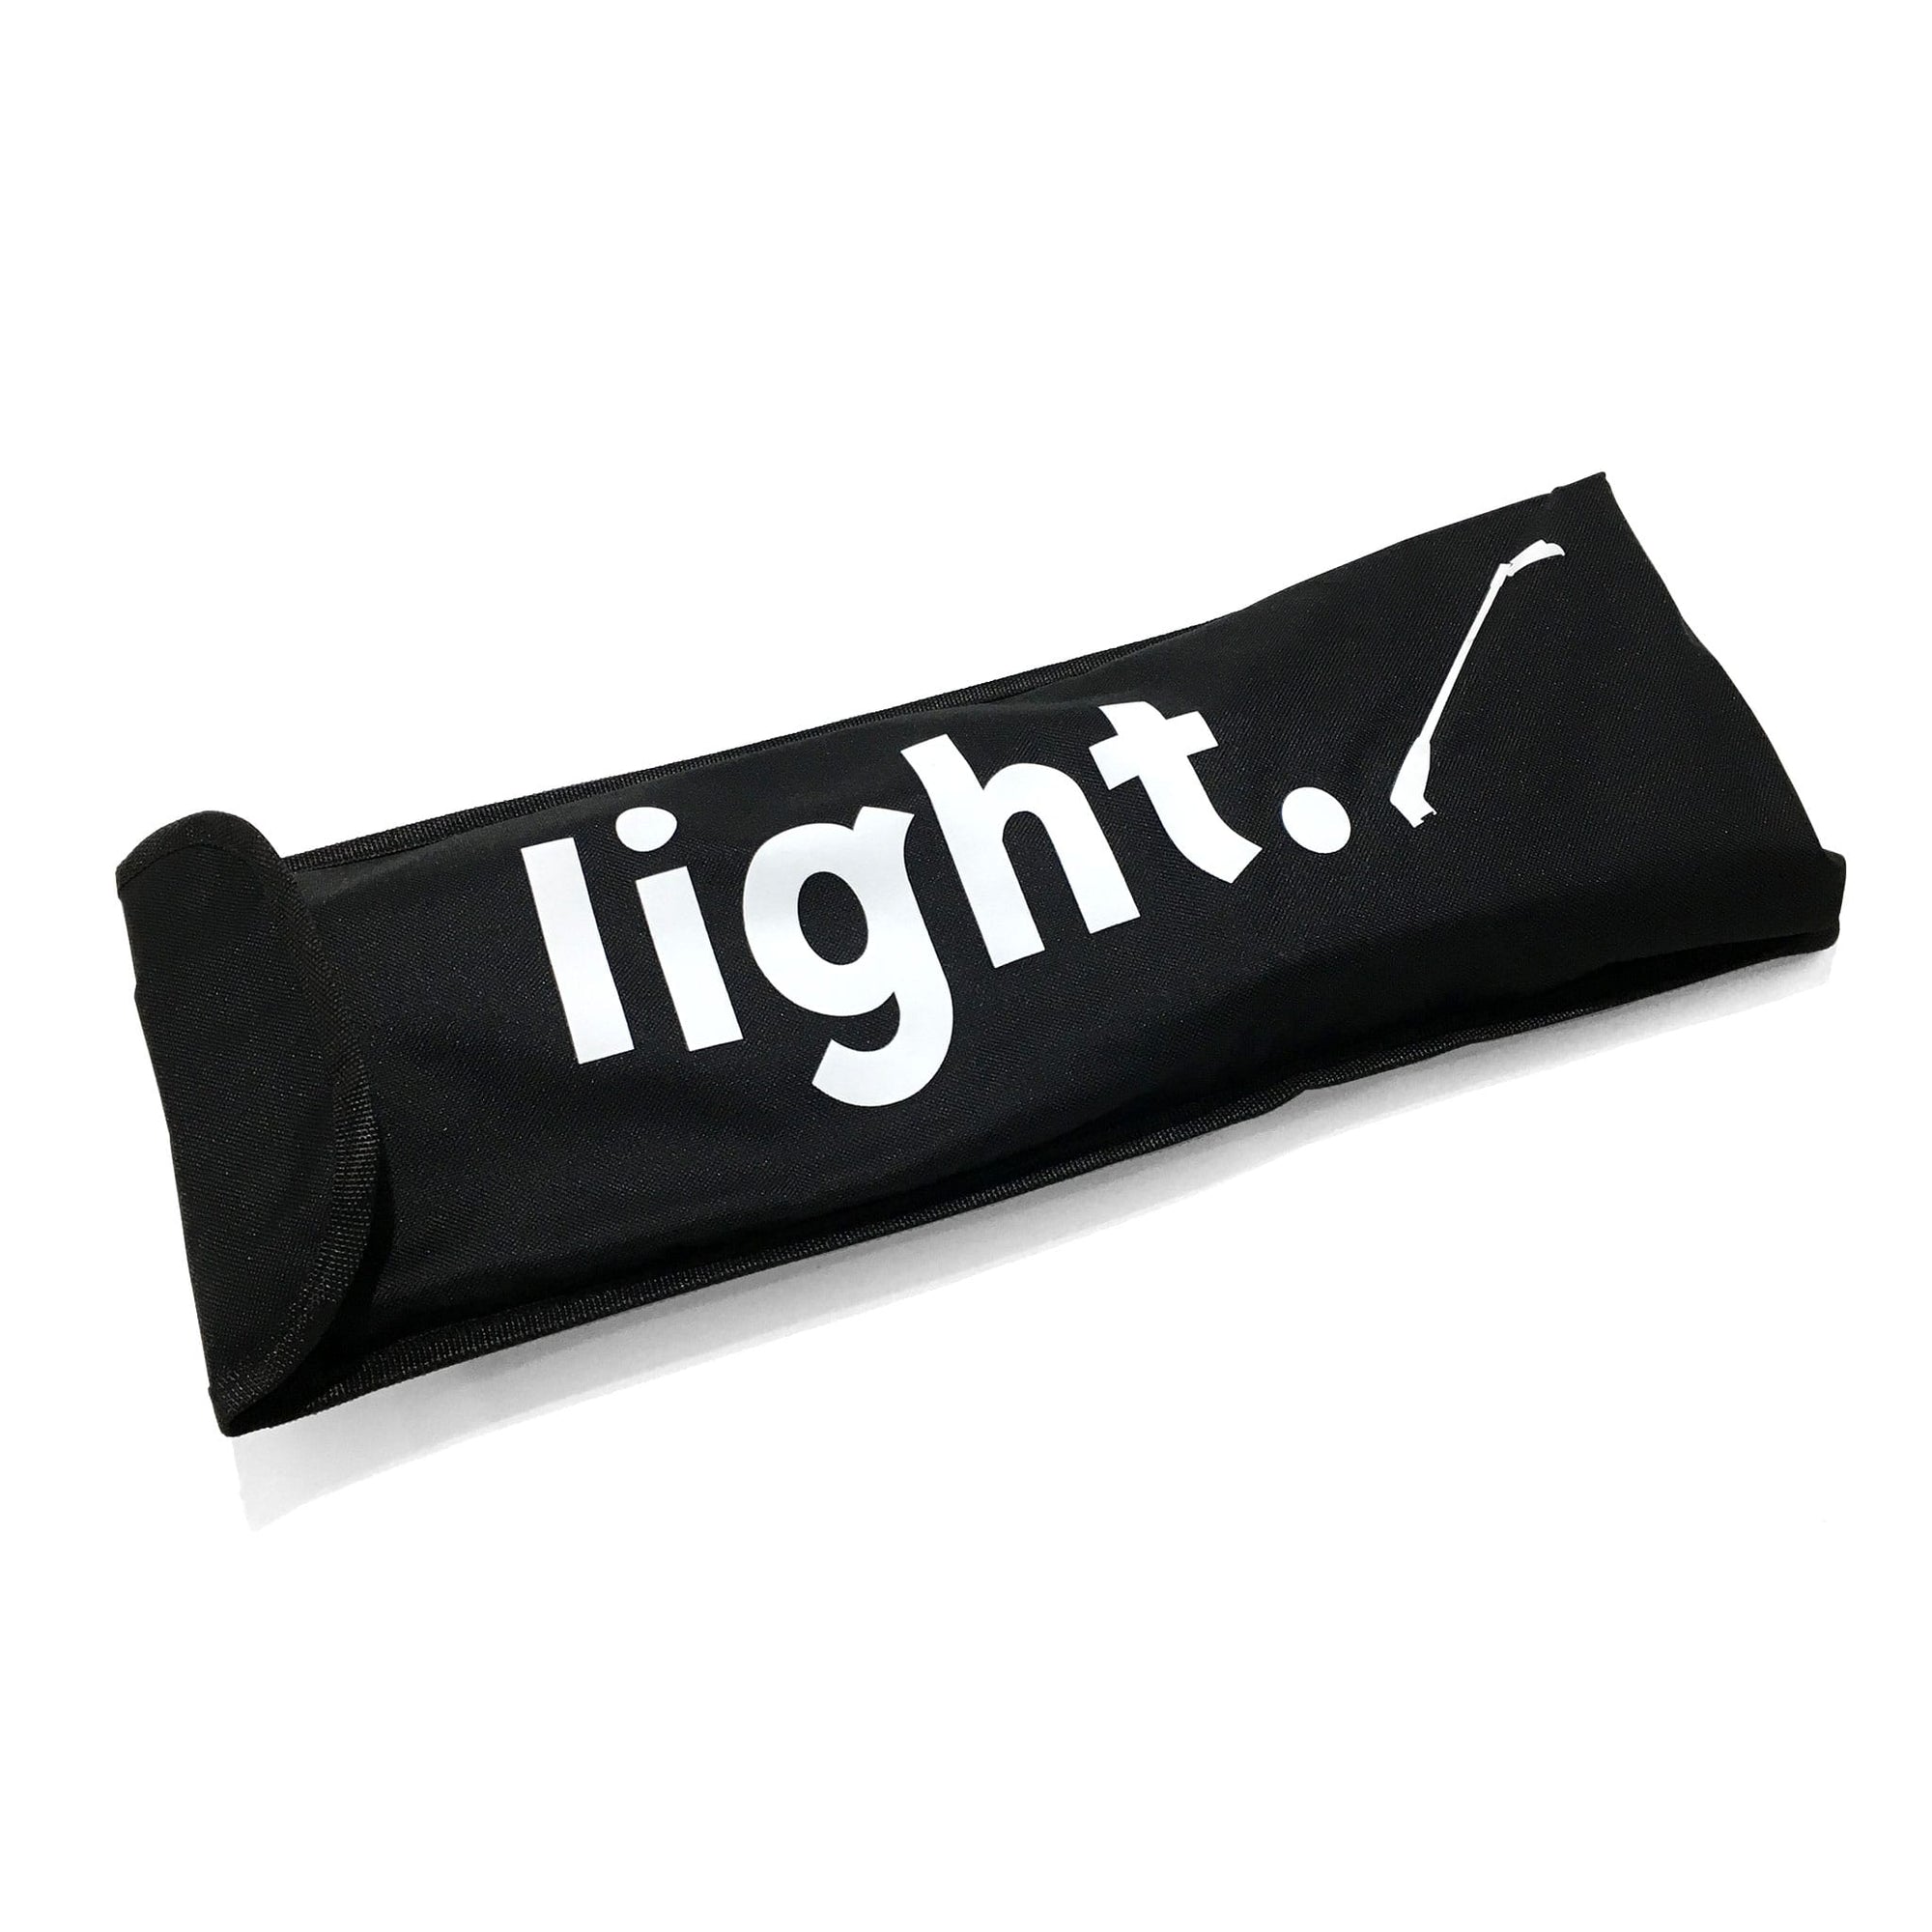 Padded bag for LED spotlight w/ print